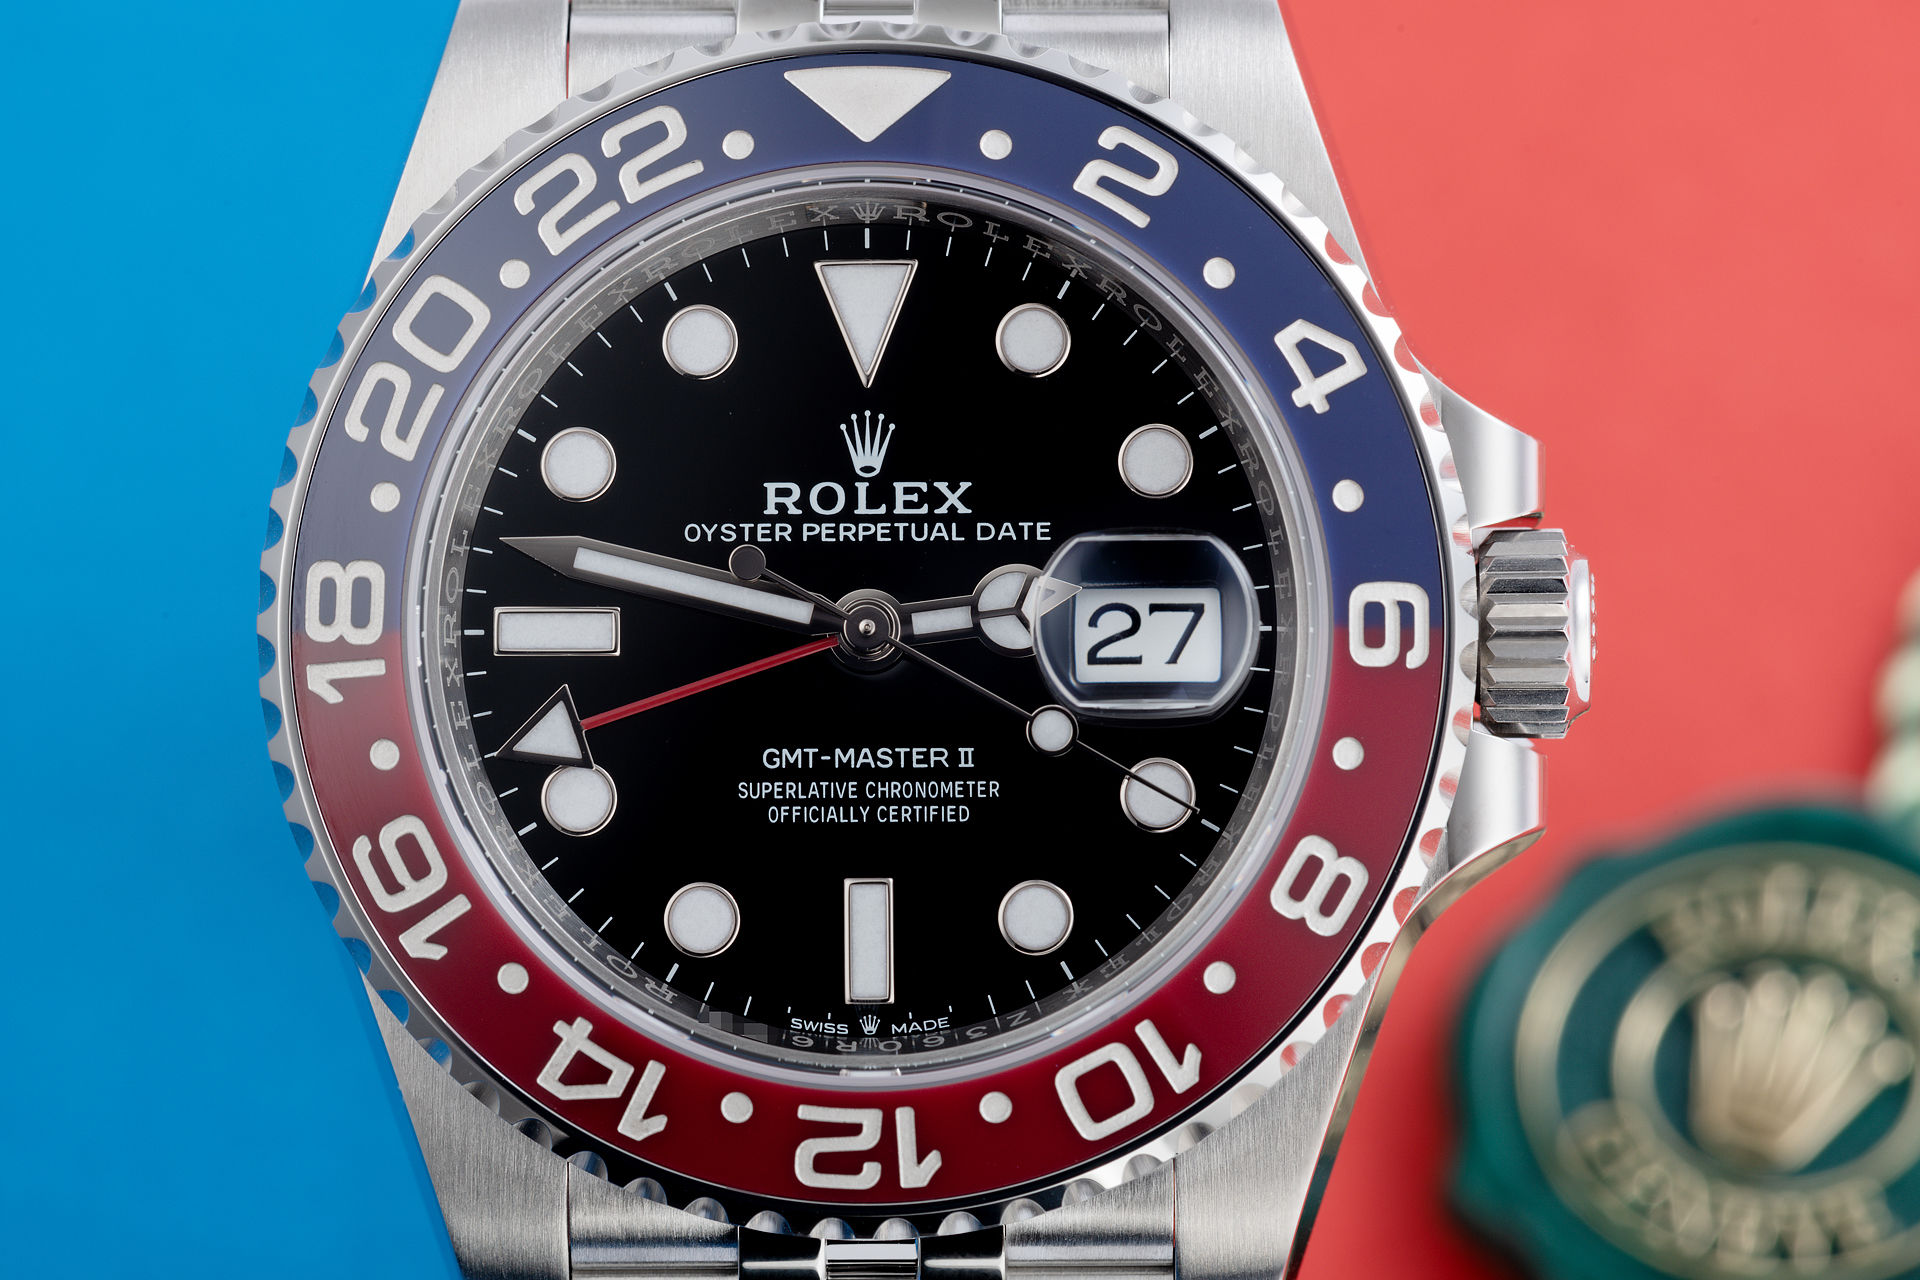 ref 126710BLRO | 5 Year Warranty 'Brand New' | Rolex GMT-Master II